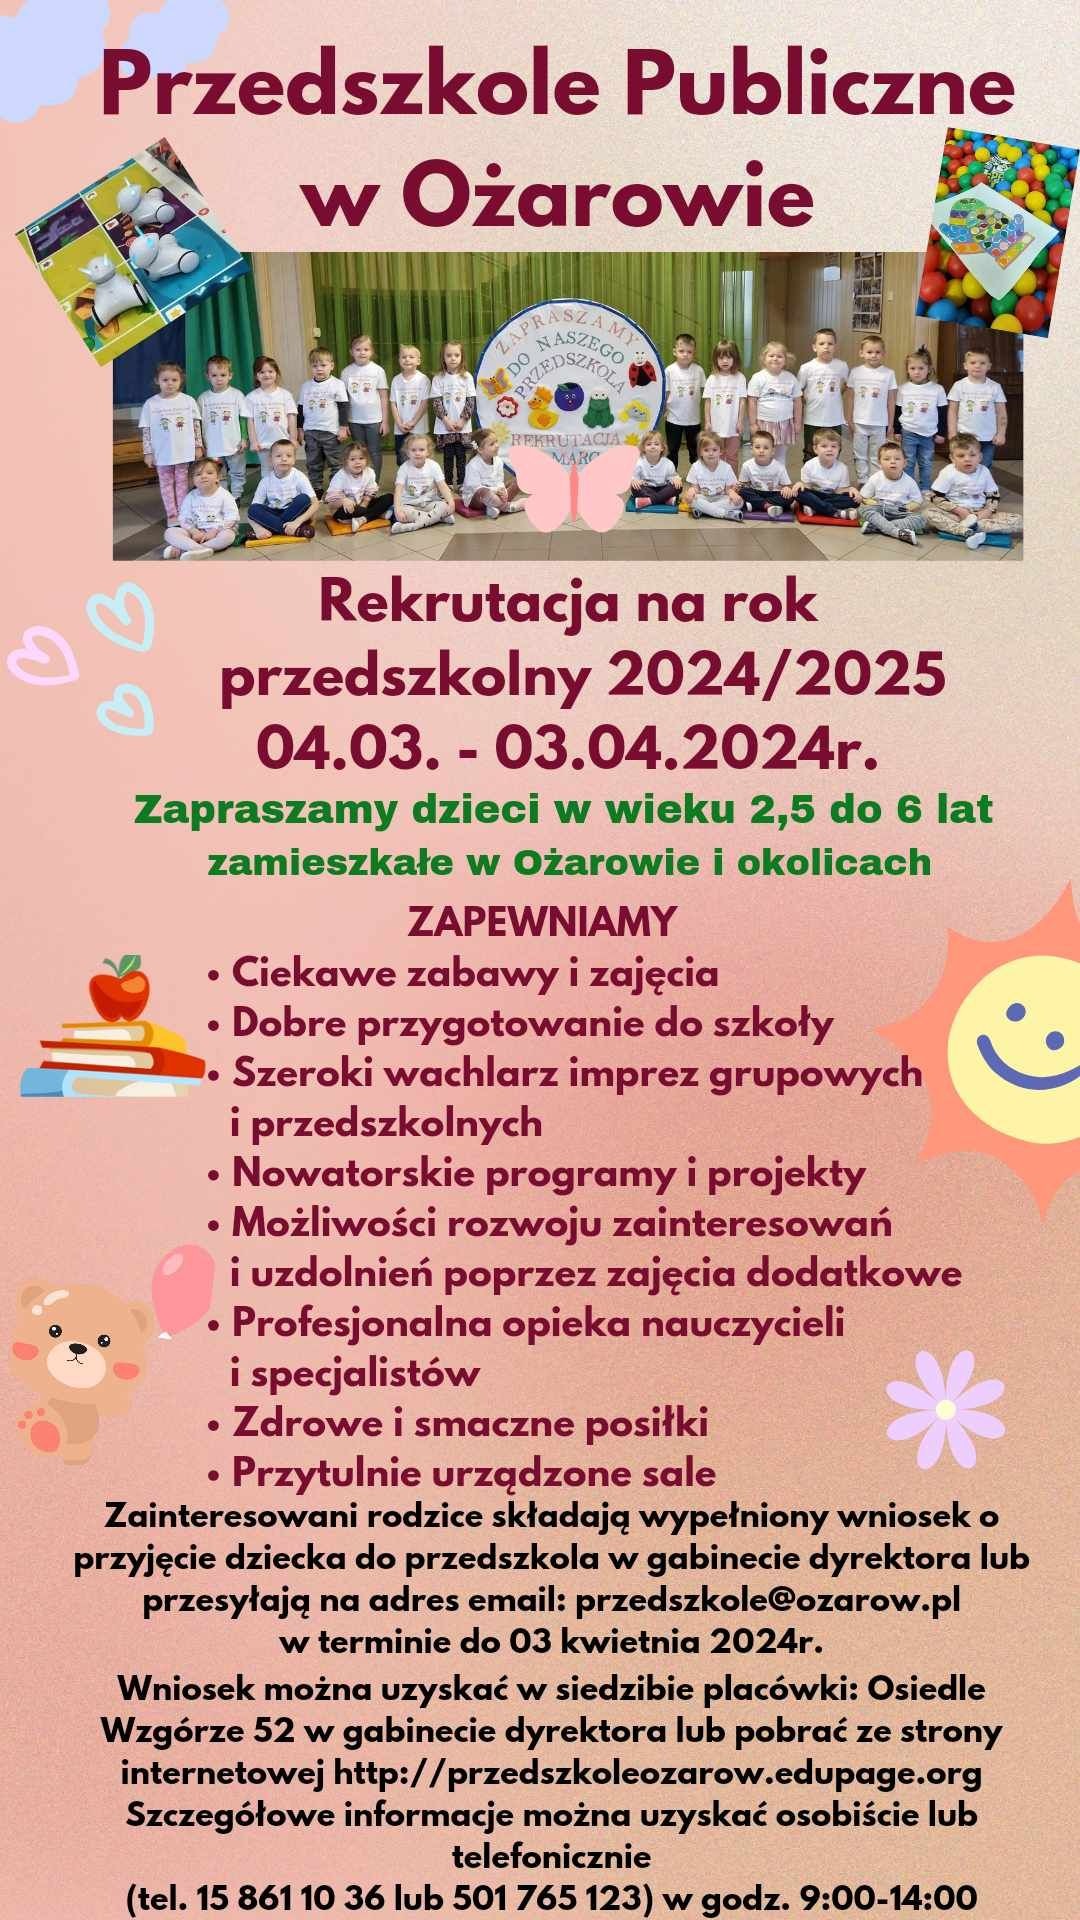 Rekrutacja na rok przedszkolny 2024/2025 - Obrazek 1